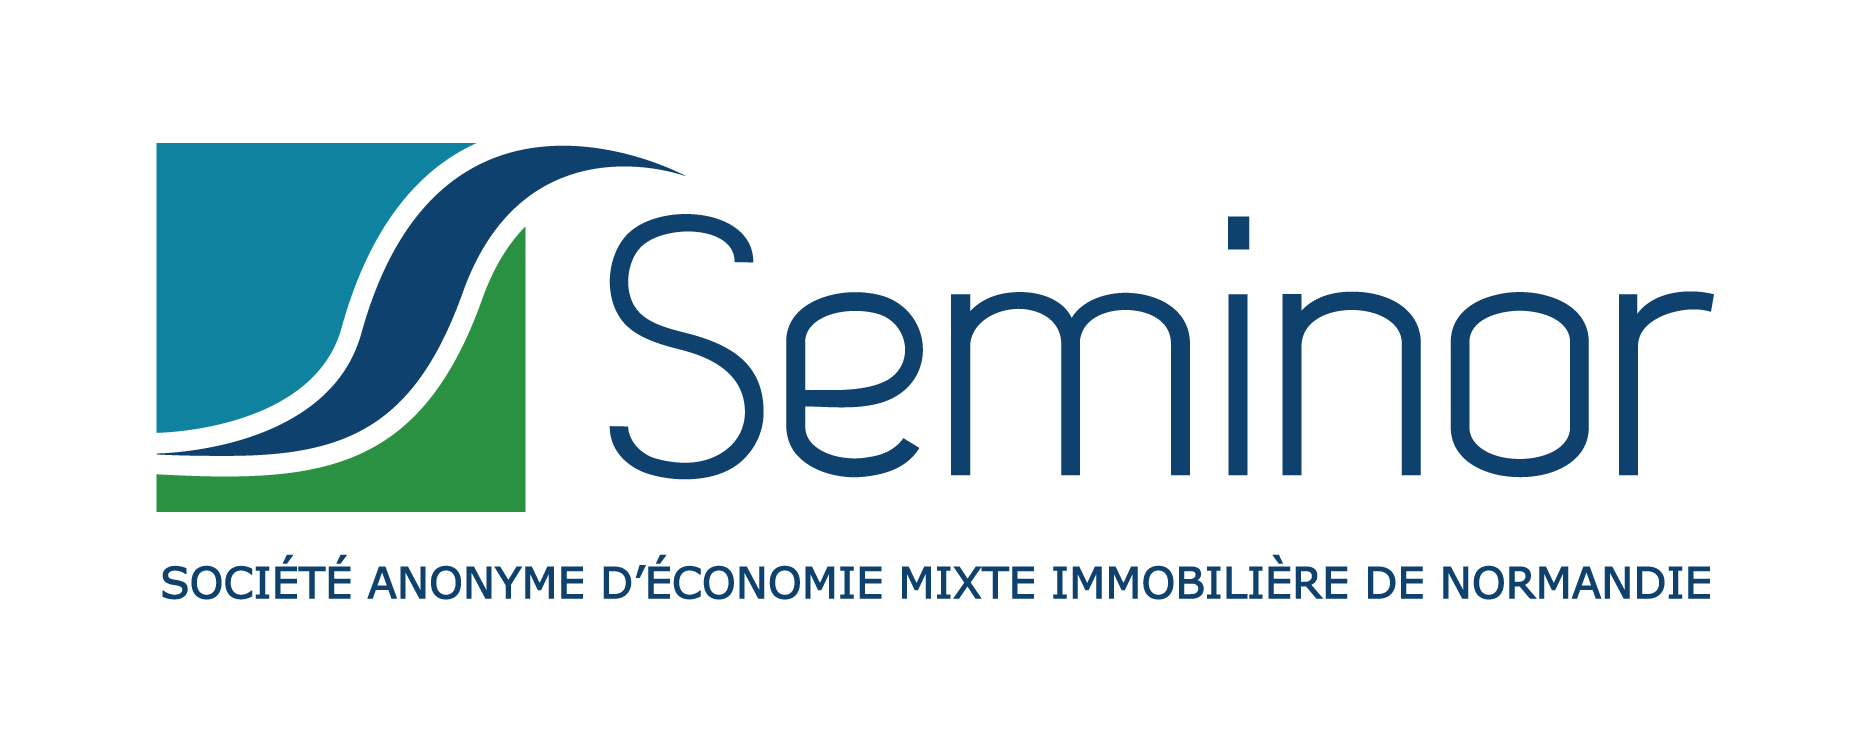 Logo Seminor